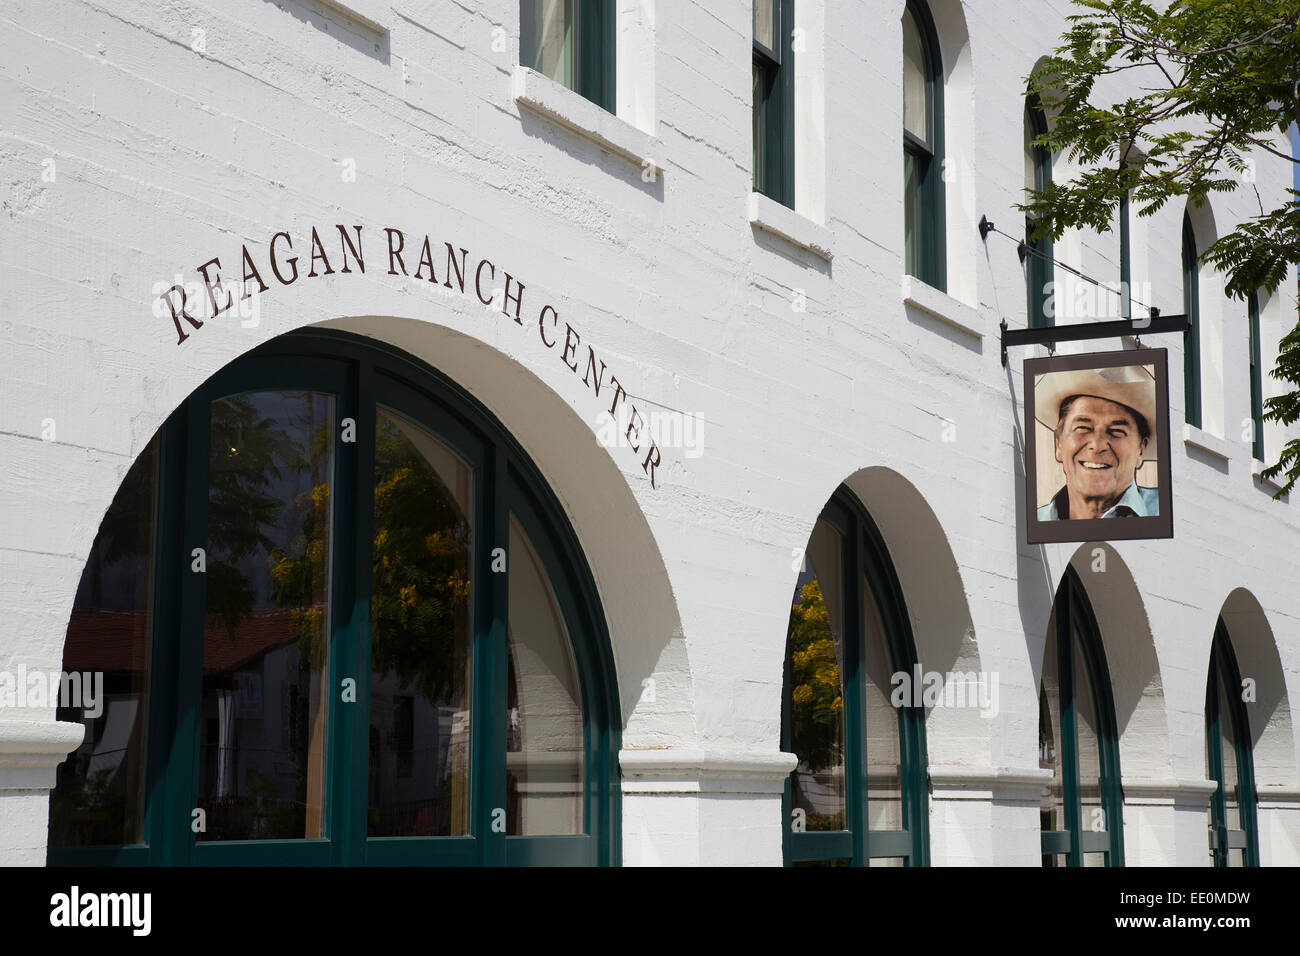 Reagan Ranch Center - junge America Foundation auf der State Street, Santa Barbara, Kalifornien Stockfoto